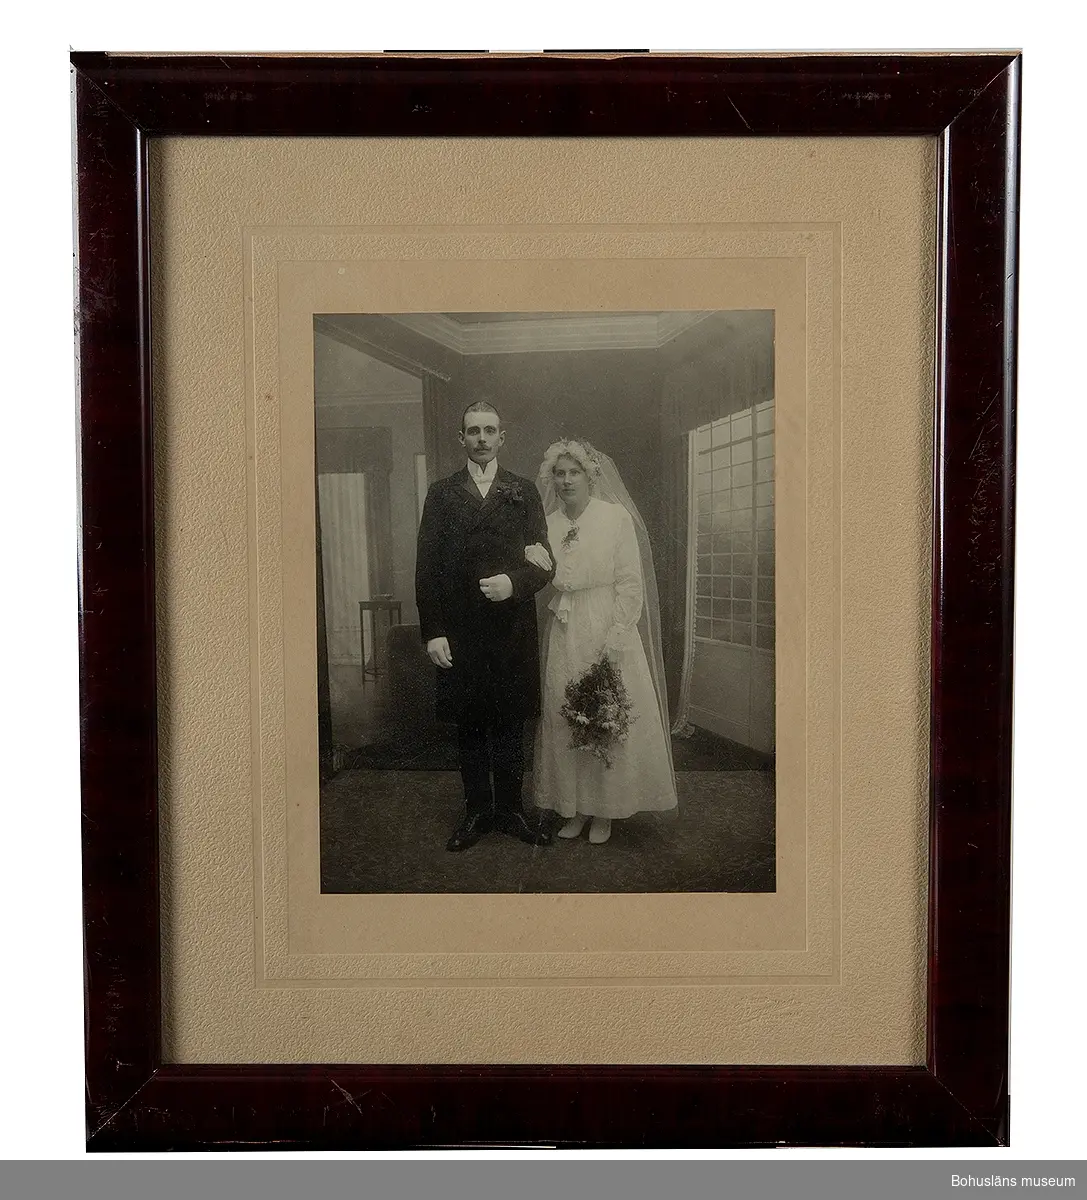 Bröllopsfotografi inramat med slät mahognyram och glas.

Sammanhör med UM015462-UM015505. Se bilaga.